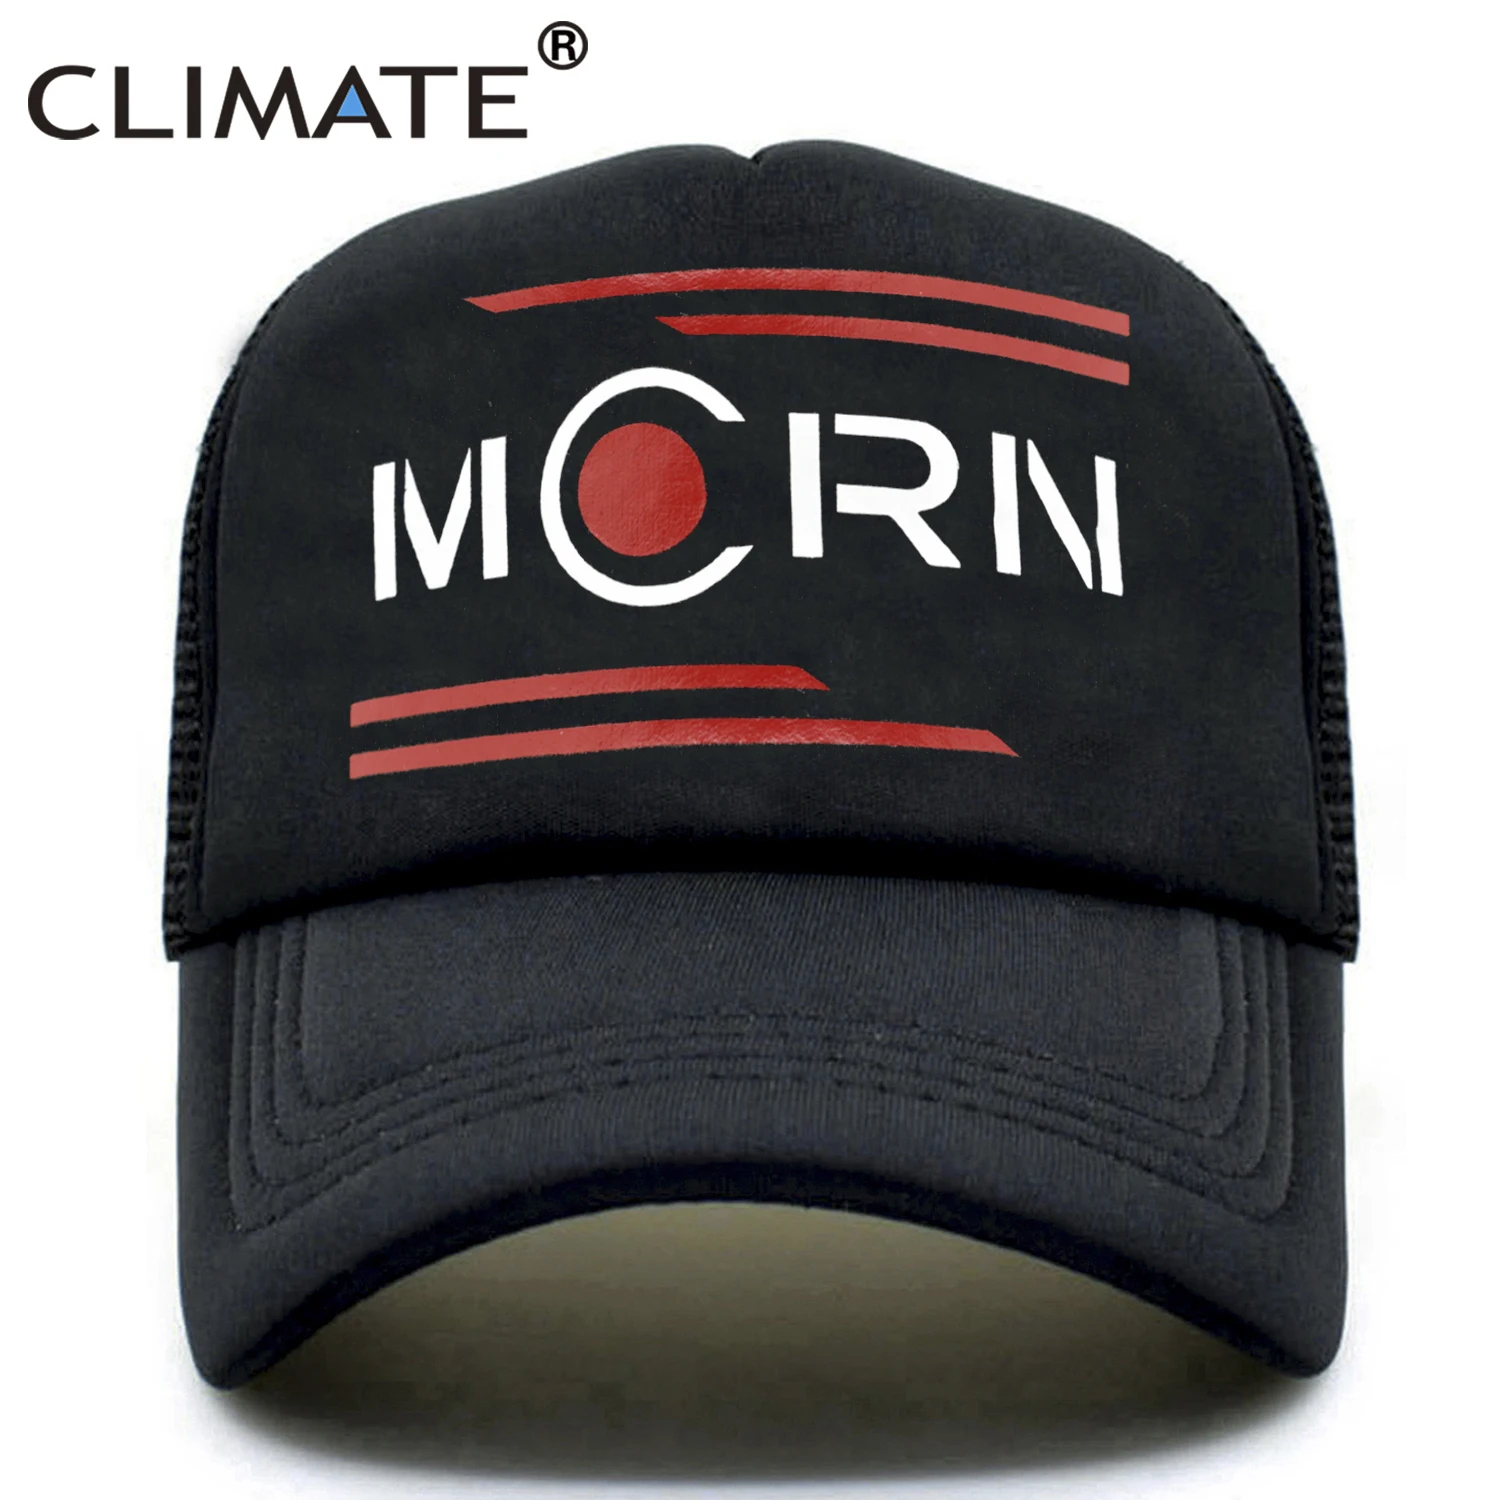 Климат Расширенная Кепка s шляпа для мужчин Mcrn Mars сетка Кепка Дальнобойщика шляпа Mars Rocinante летняя классная бейсболка шляпа для мужчин